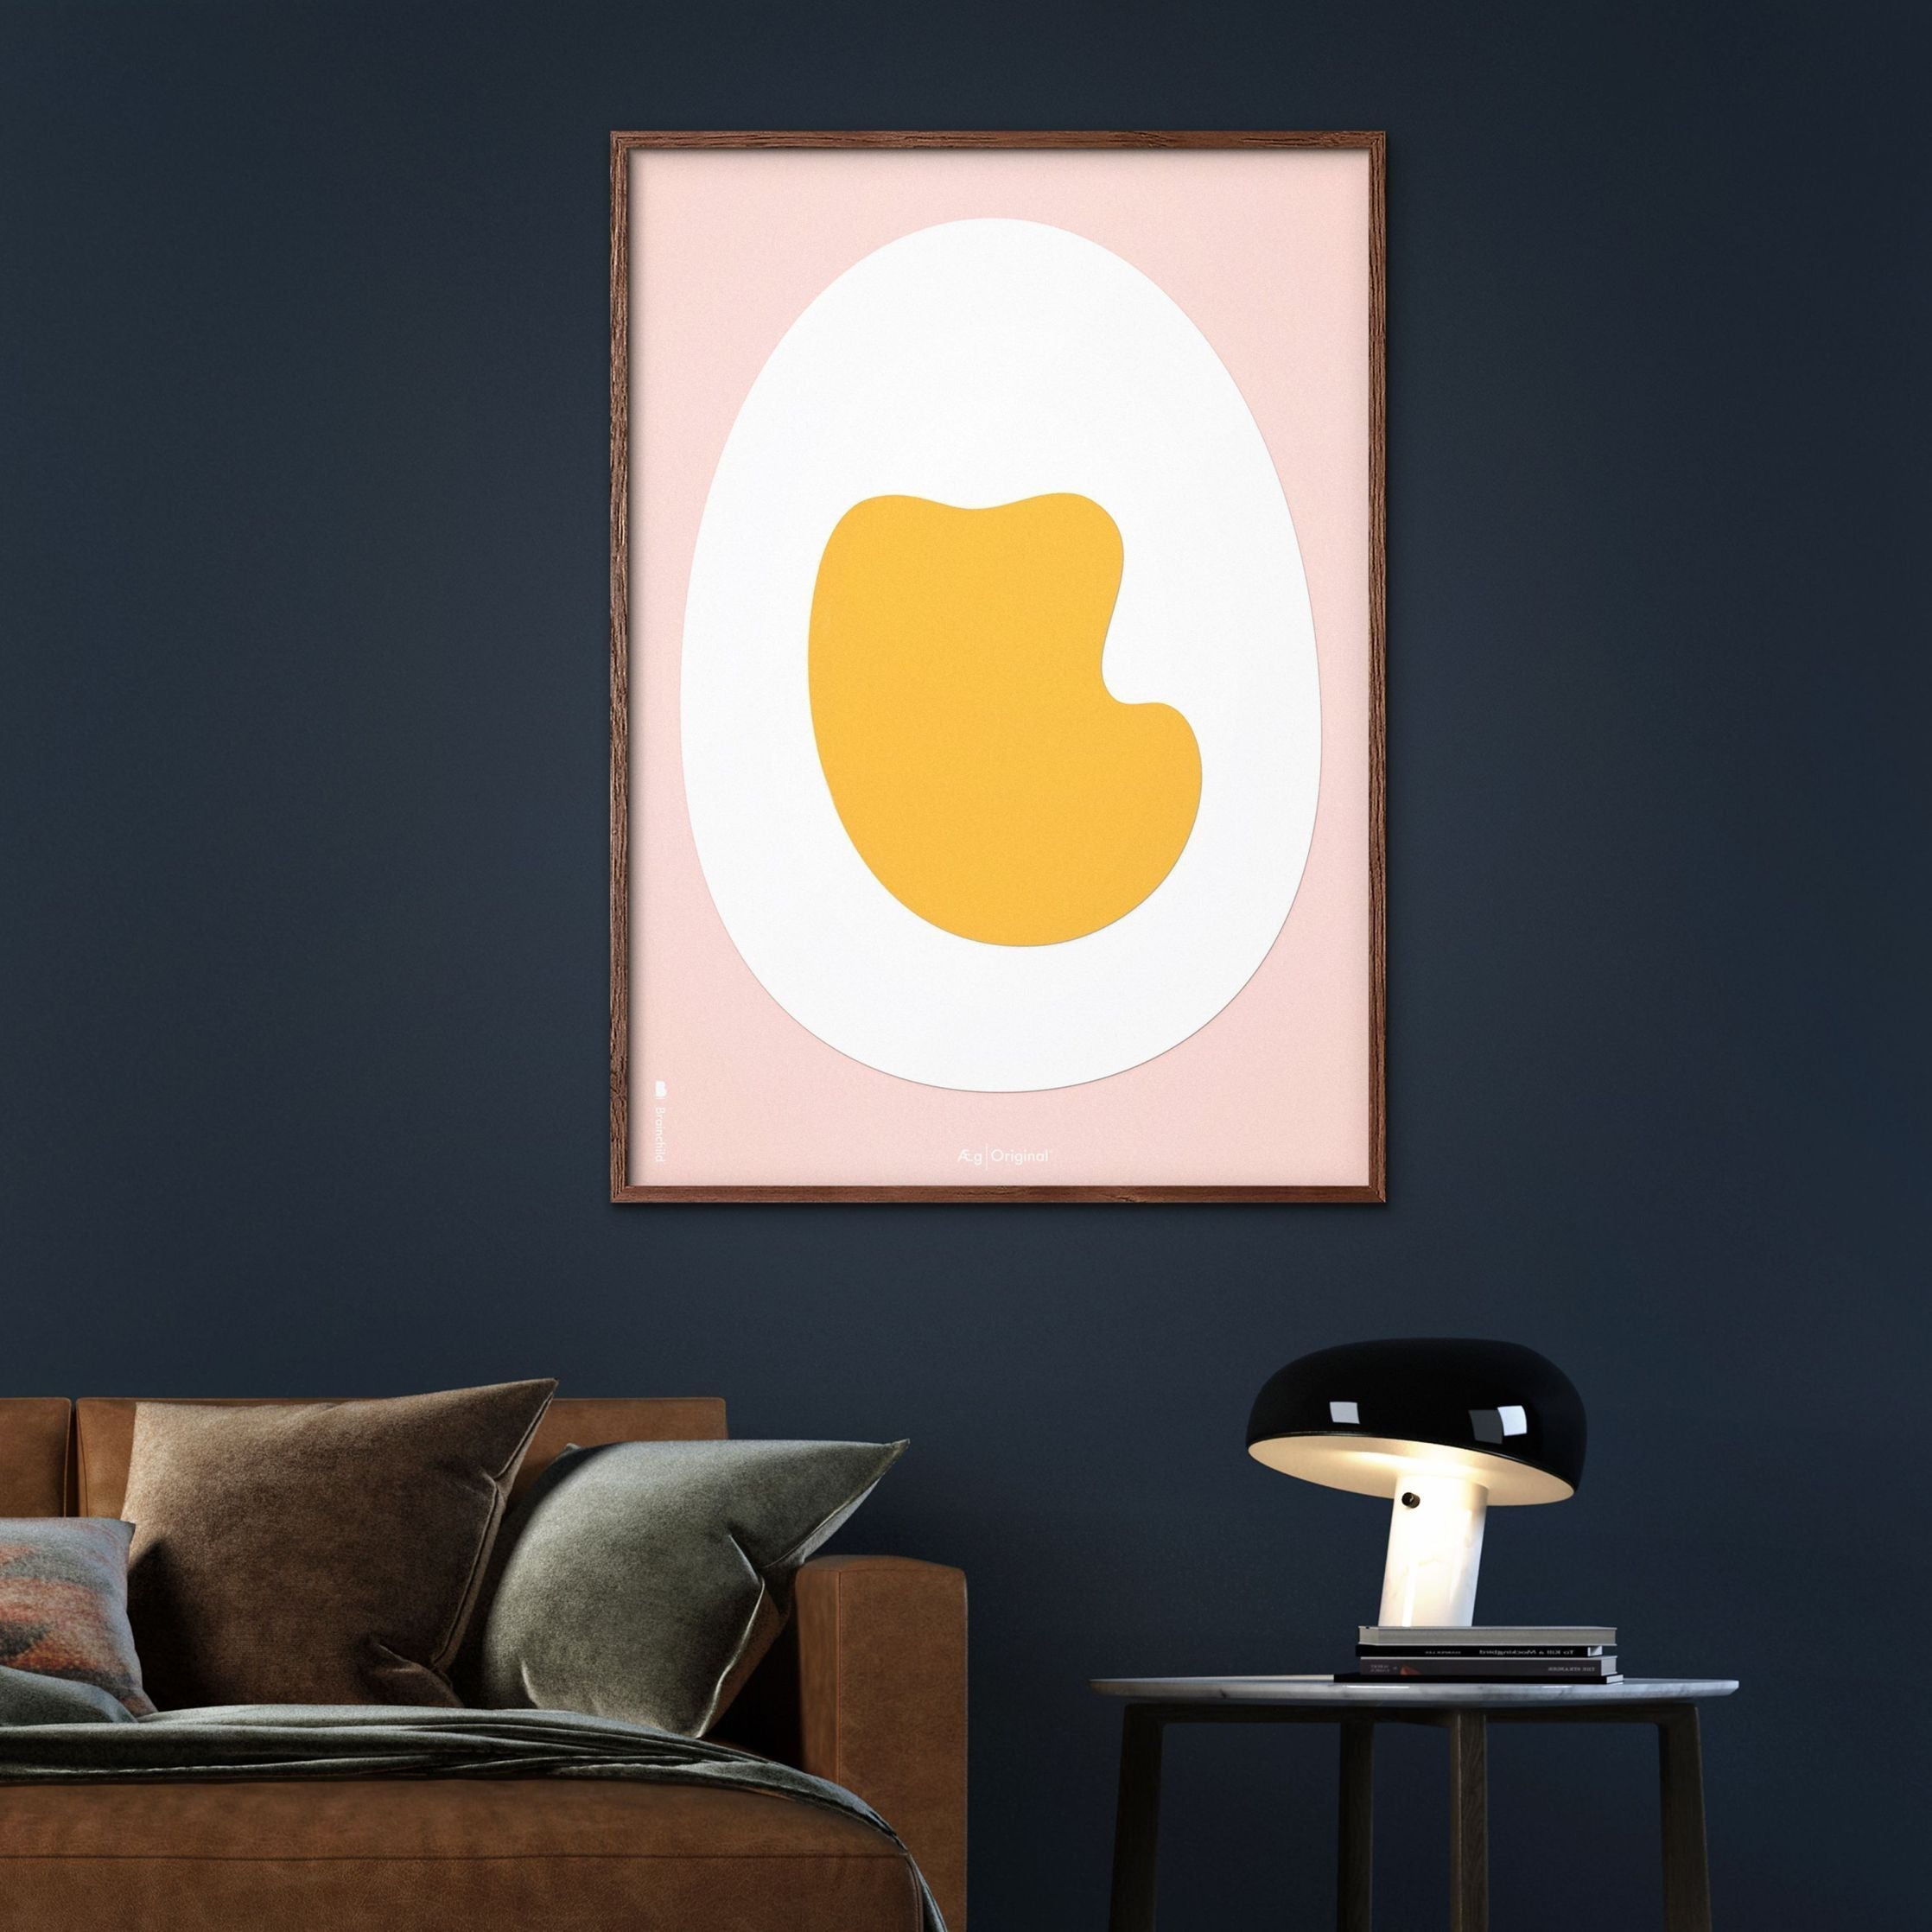 Plakát z vaječného papíru s vaječným papírem, rám v černém lakovaném dřevu 70 x100 cm, růžové pozadí